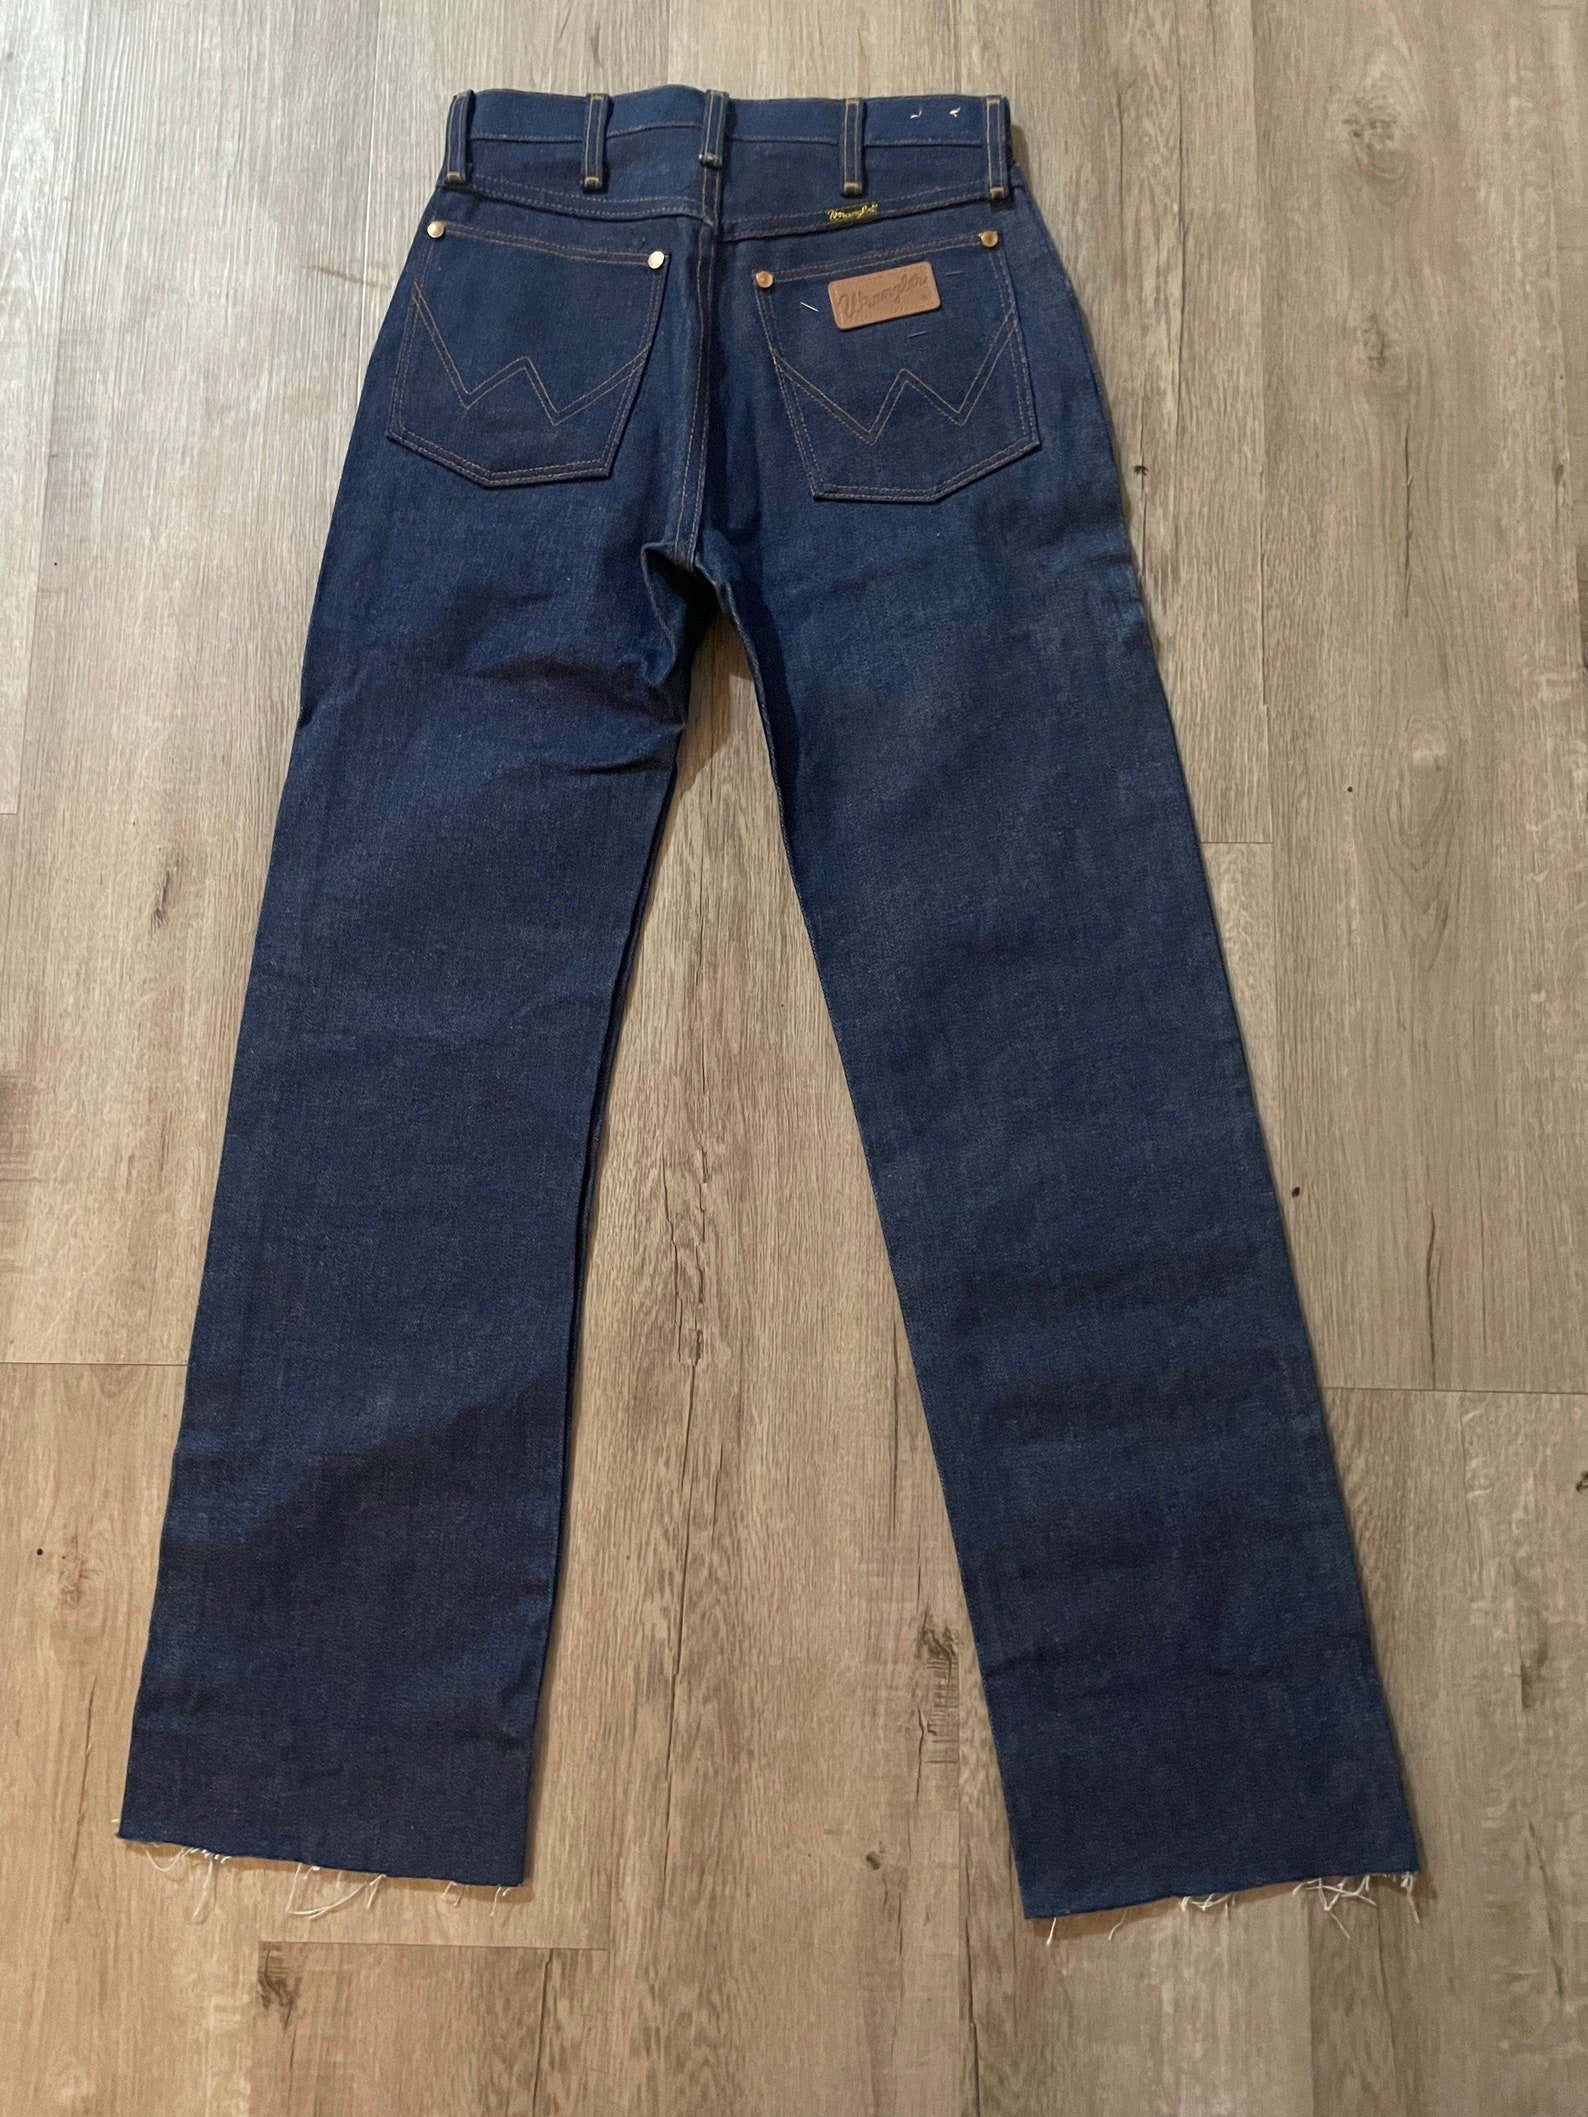 Vintage Wrangler Jeans 1950s Raw Denim Indigo No Hemline Blue - Etsy